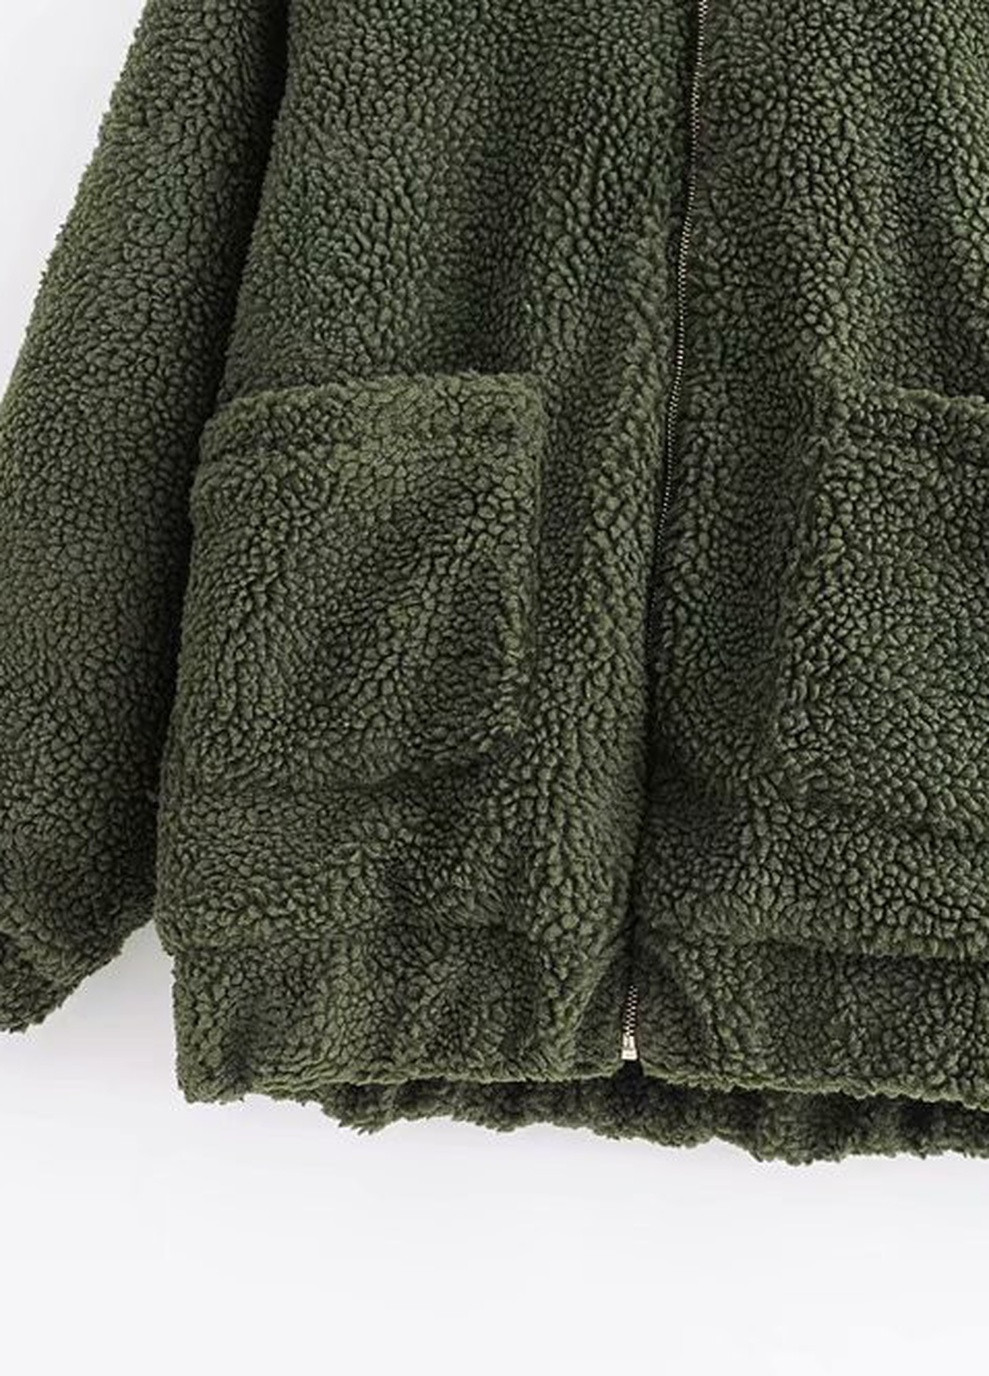 Зеленая демисезонная куртка женская из искусственного меха fluffy, зеленый Berni Fashion 55580